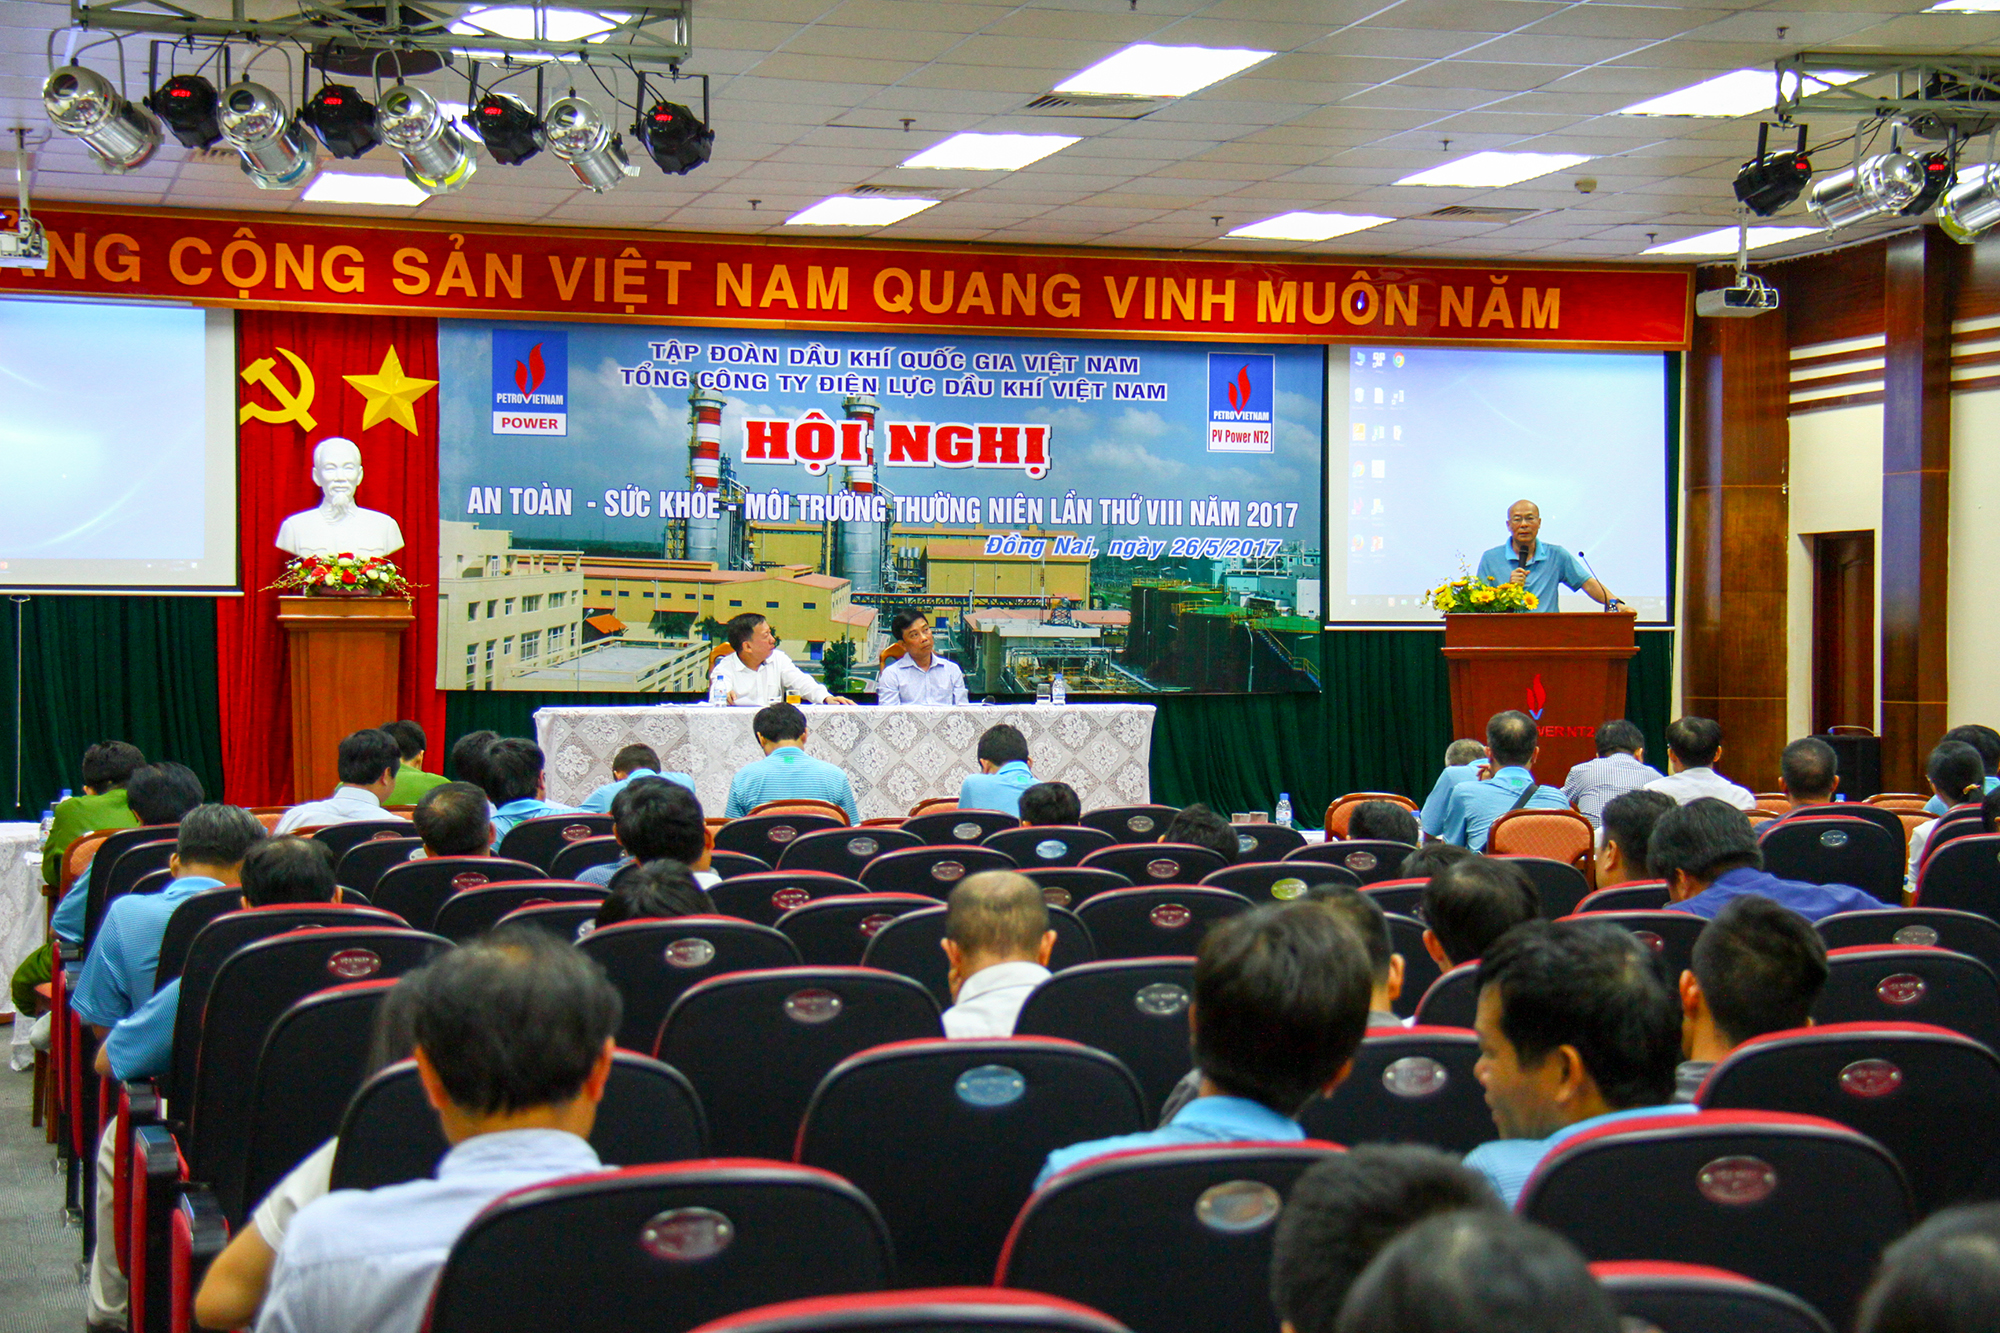 Hội nghị An toàn sức khoẻ môi trường thường niên lần thứ VIII năm 2017 của Tổng Công ty Điện lực Dầu khí Việt Nam.